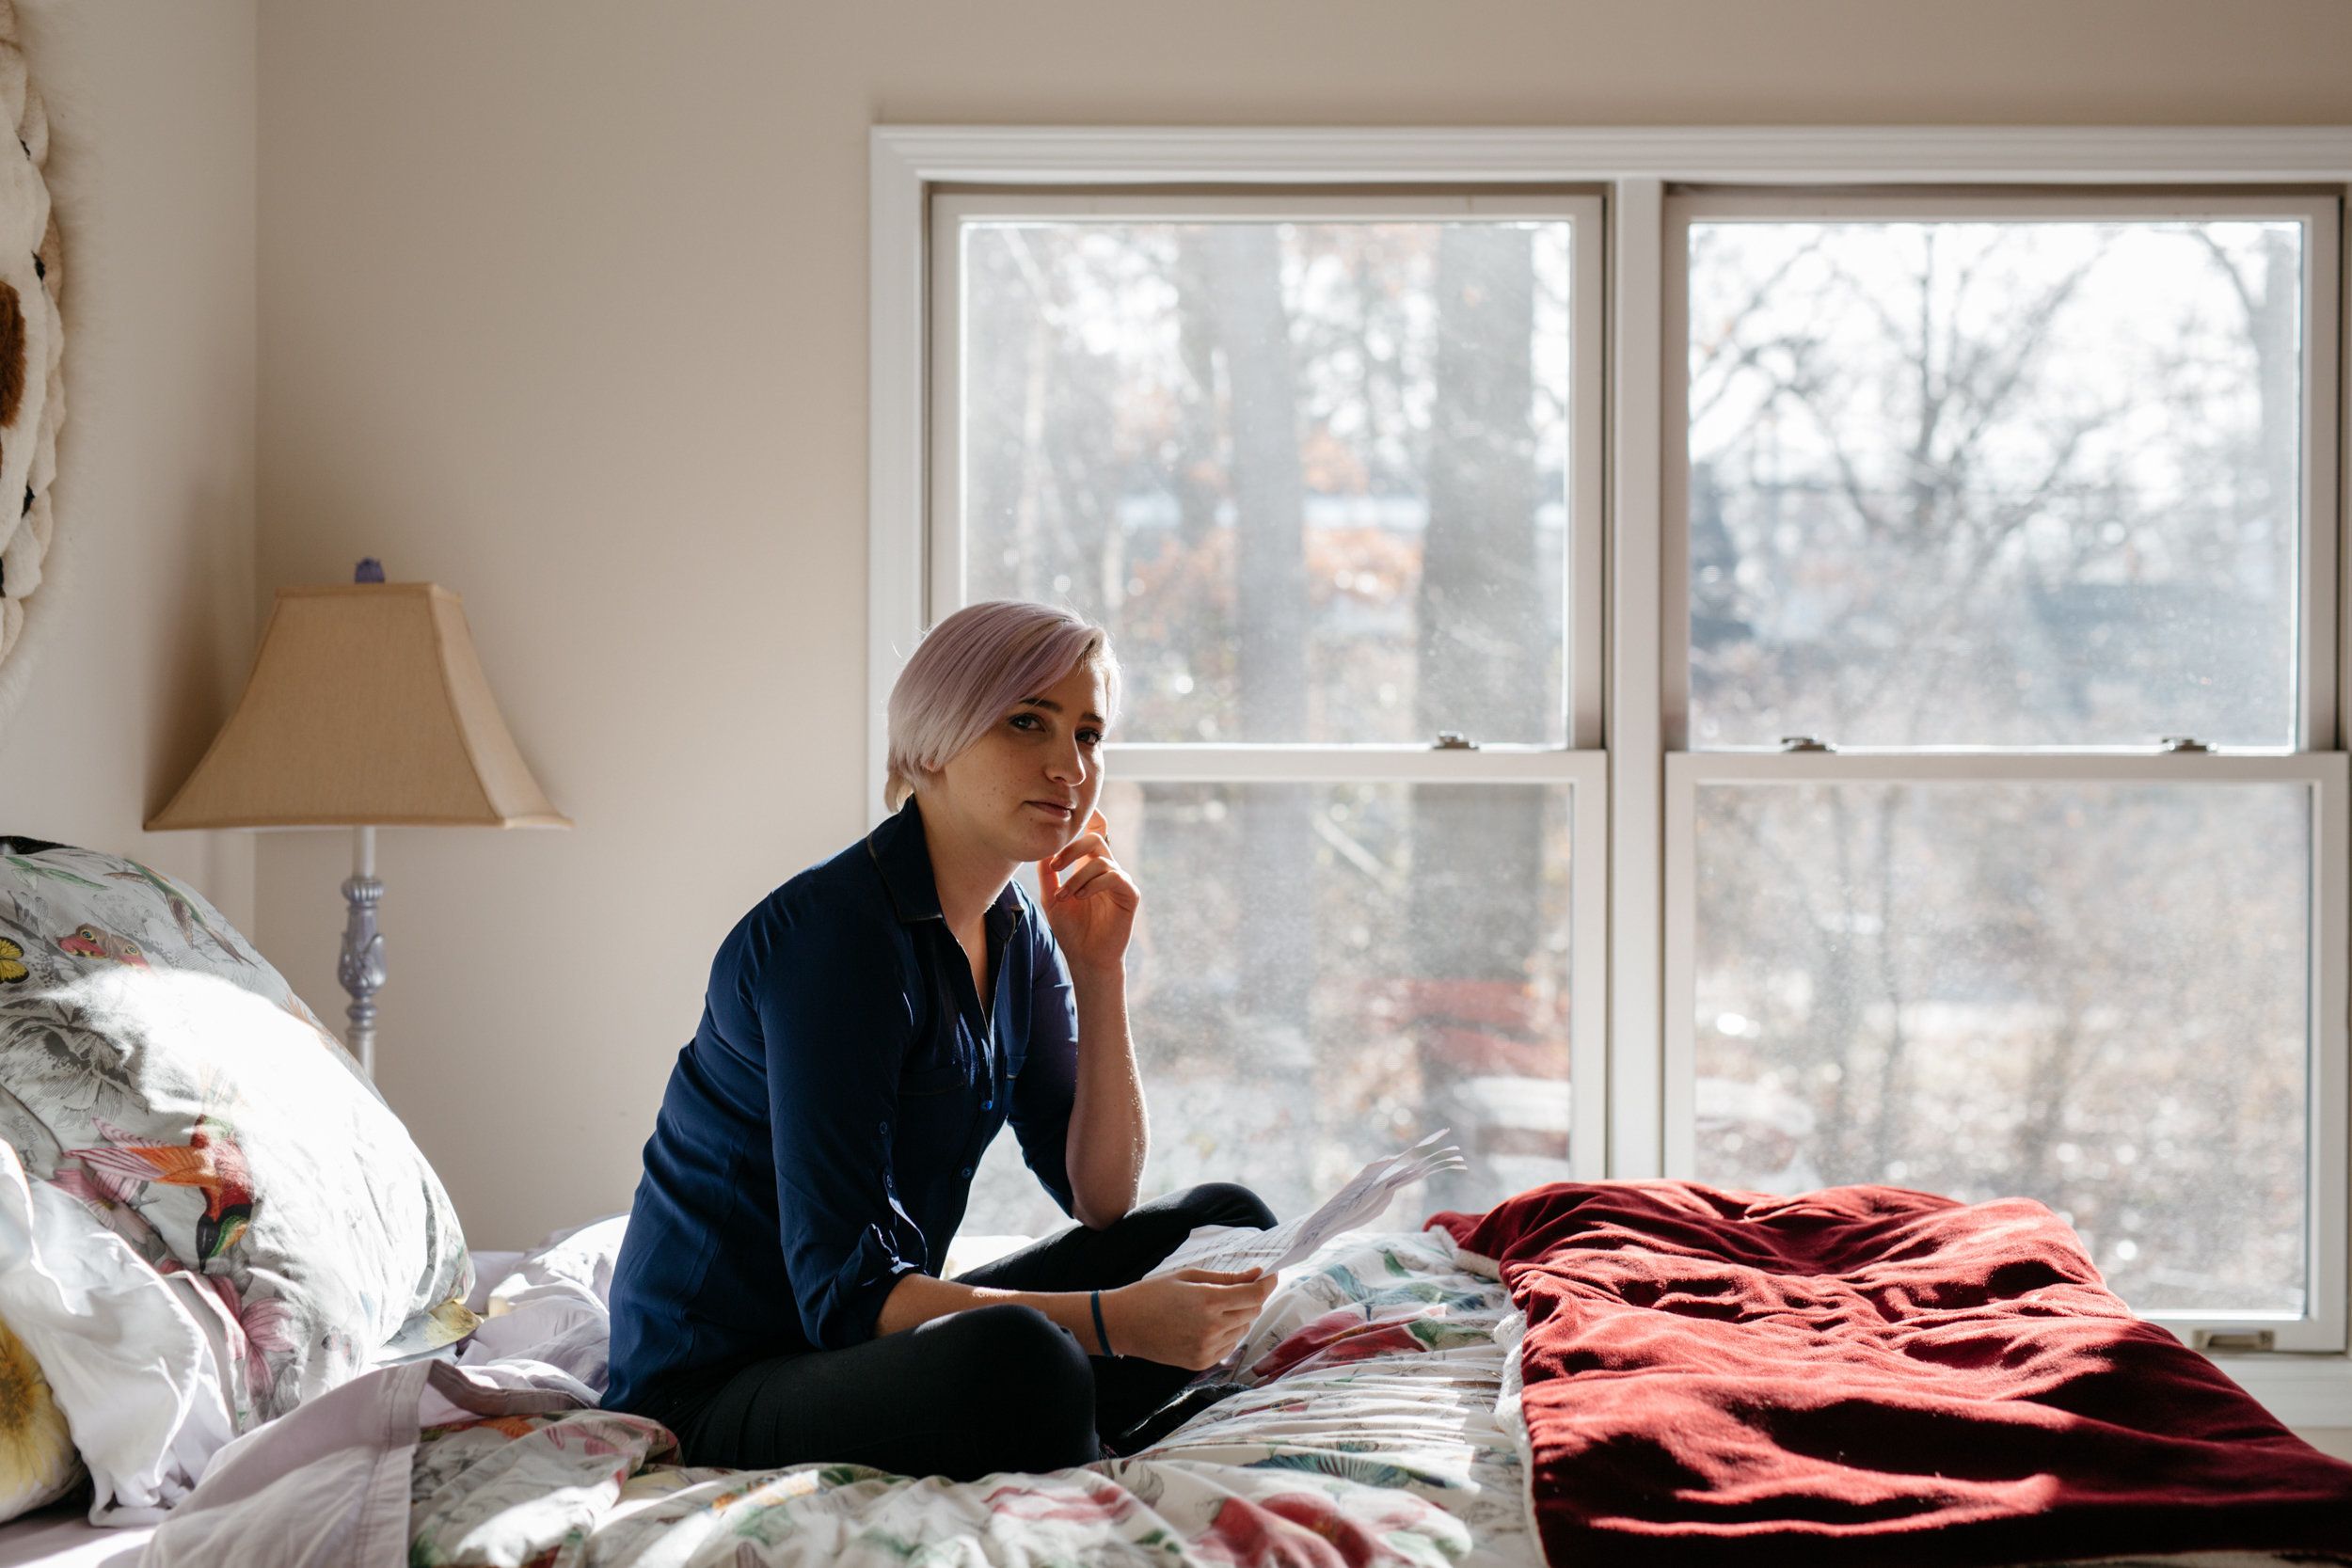  Amanda Thomashow, de 29 años, posa para un retrato en la cama donde originalmente escribió su declaración de impacto sobre Larry Nassar a ye 